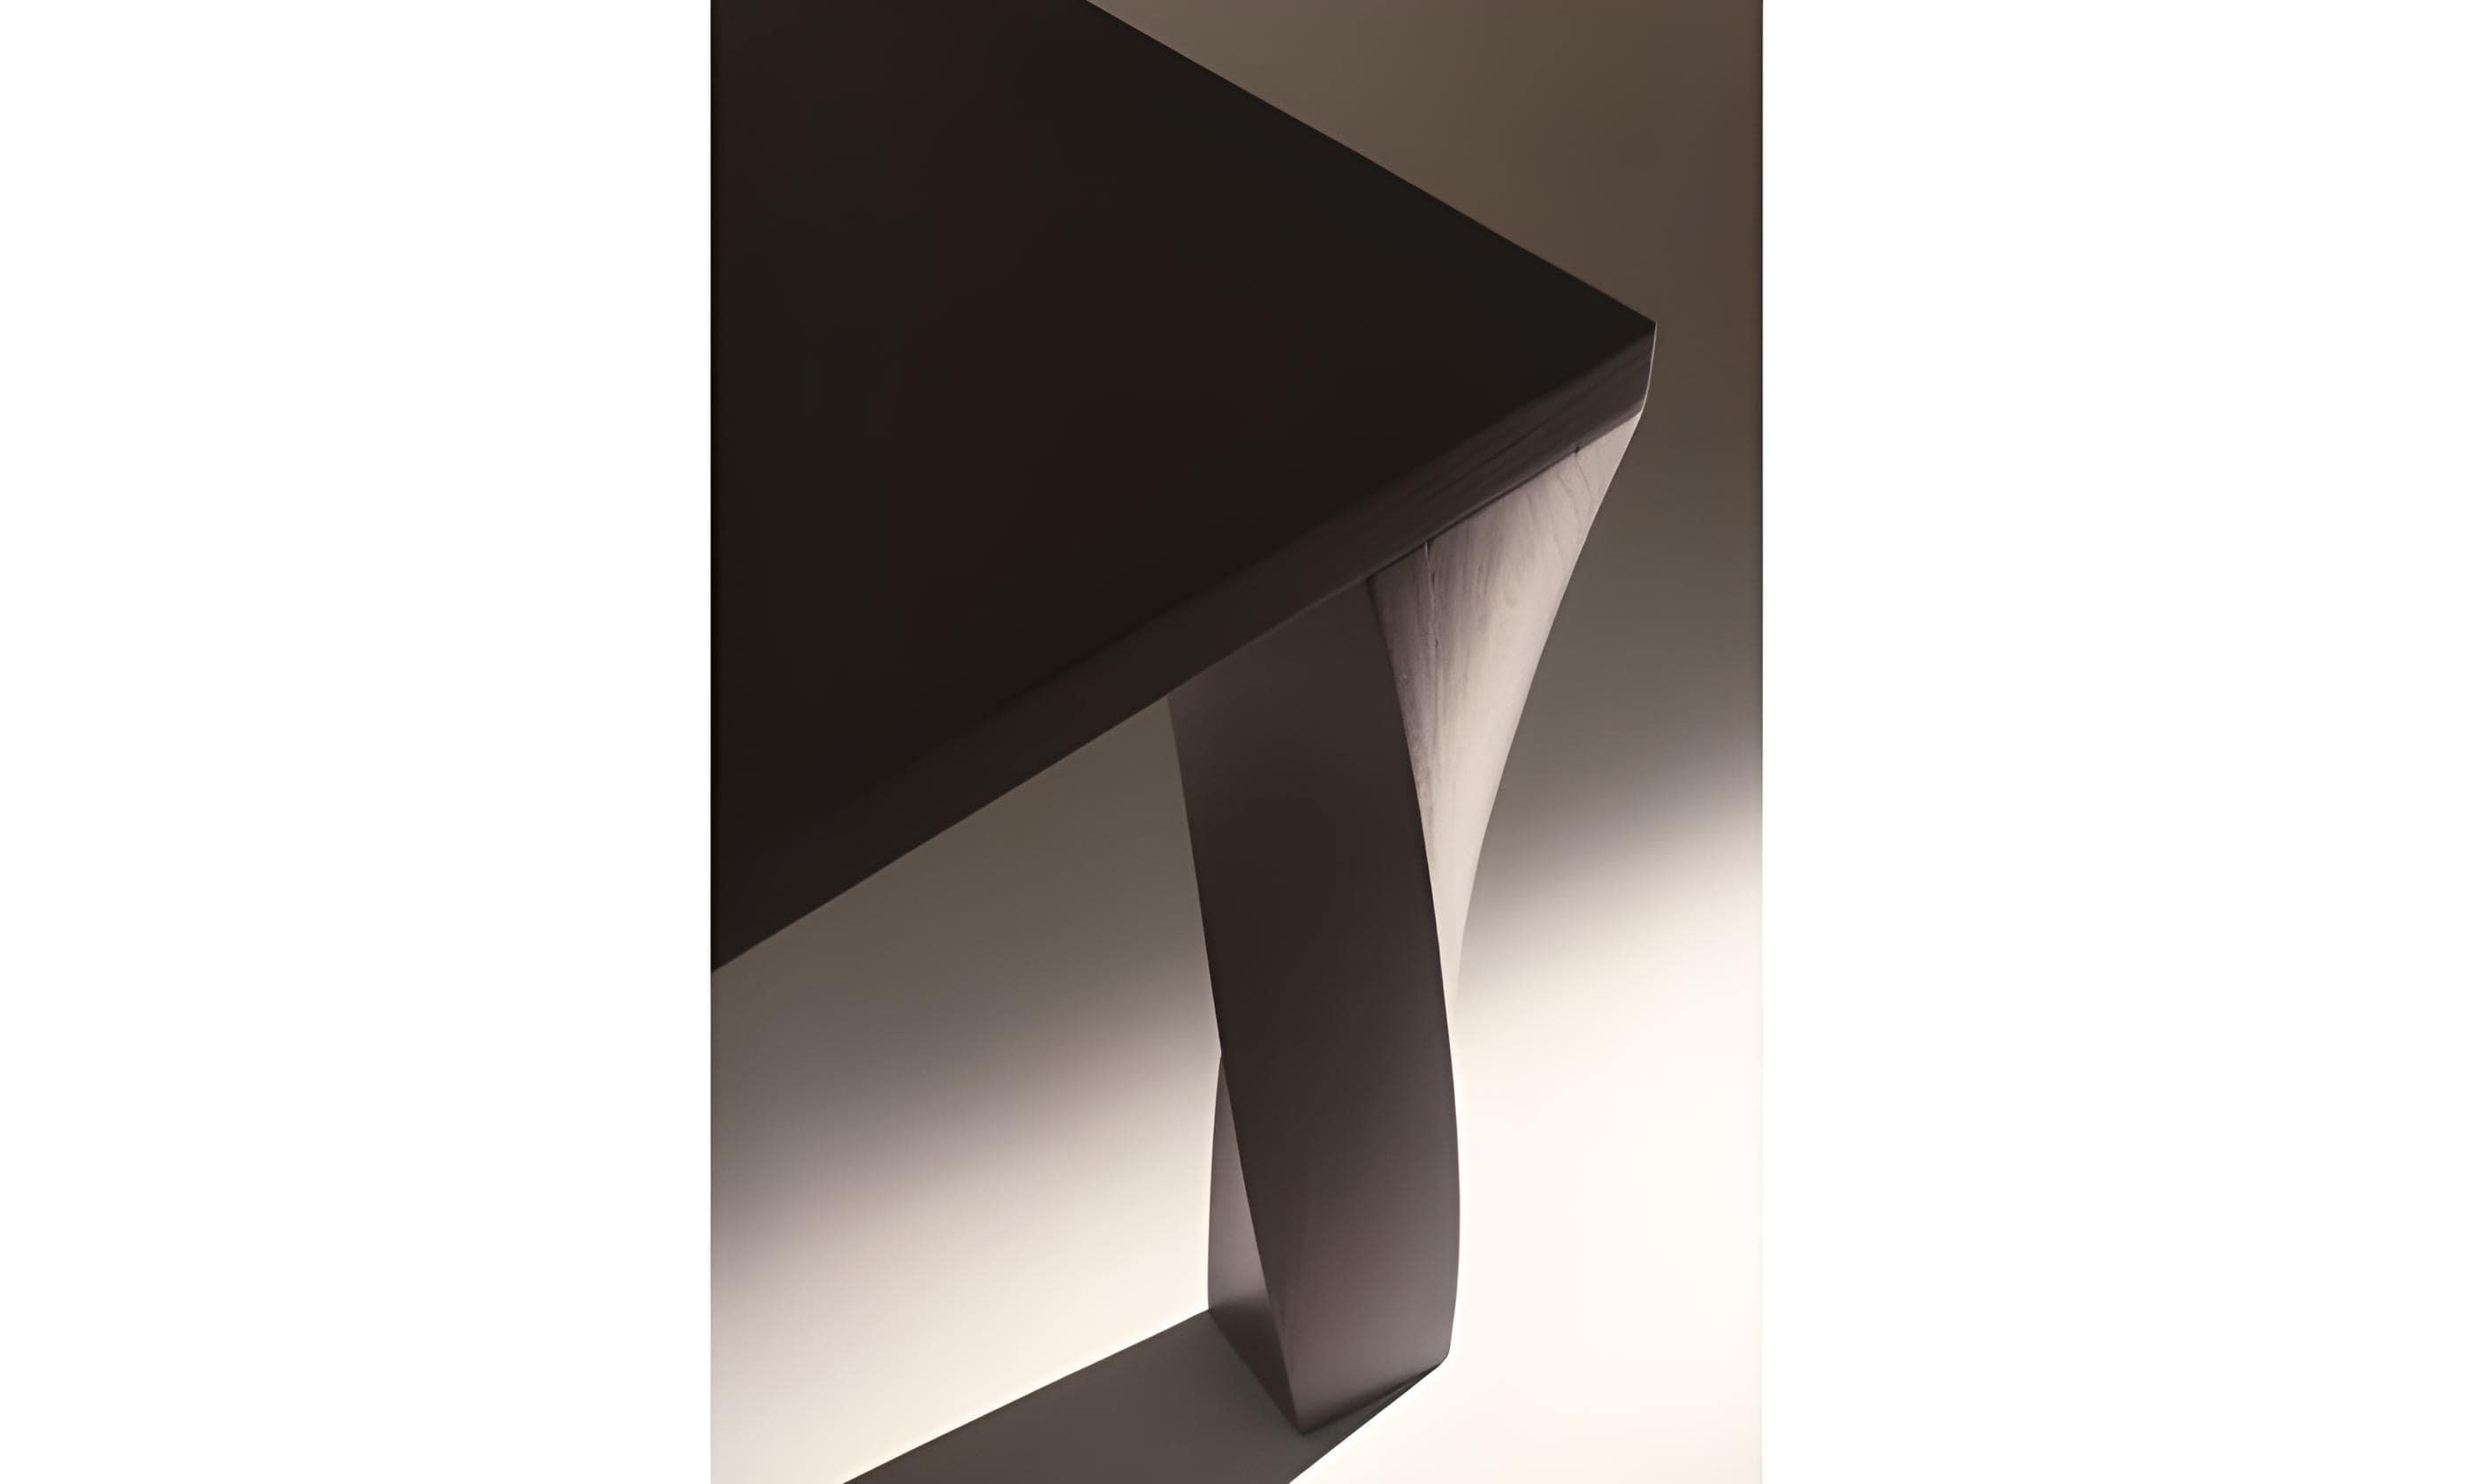 Gira che ti rigira est une table de salle à manger rectangulaire, fabriquée en bois d'orme massif teinté en noir mat. Cette pièce exceptionnelle présente des pieds gracieusement torsadés, ajoutant une touche de fantaisie et d'art à son design, tout